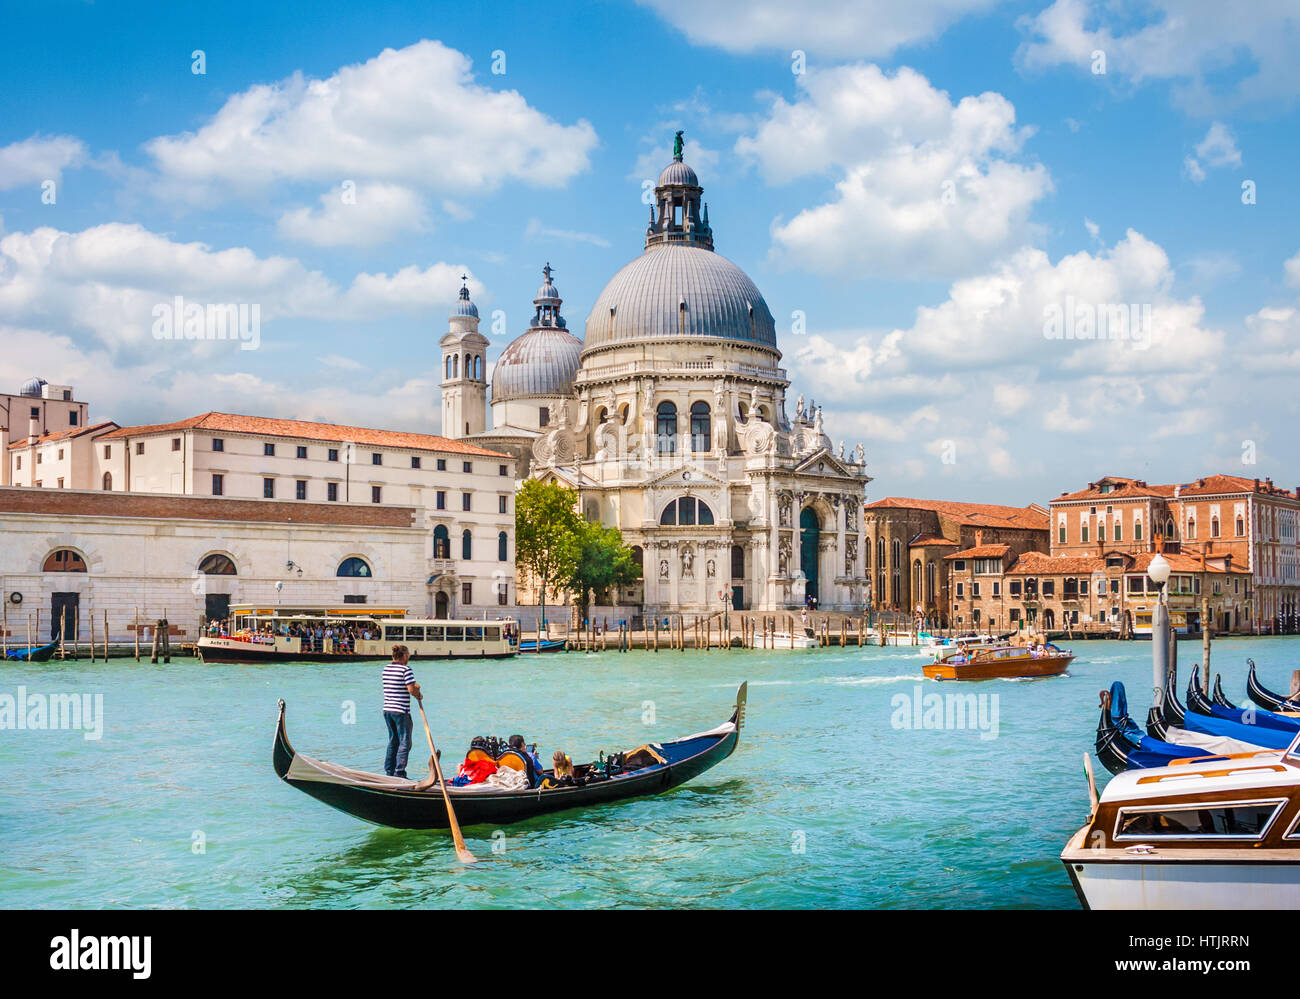 Traditional Gondola on Canal Grande with Basilica di Santa Maria della Salute in the background, Venice, Italy Stock Photo